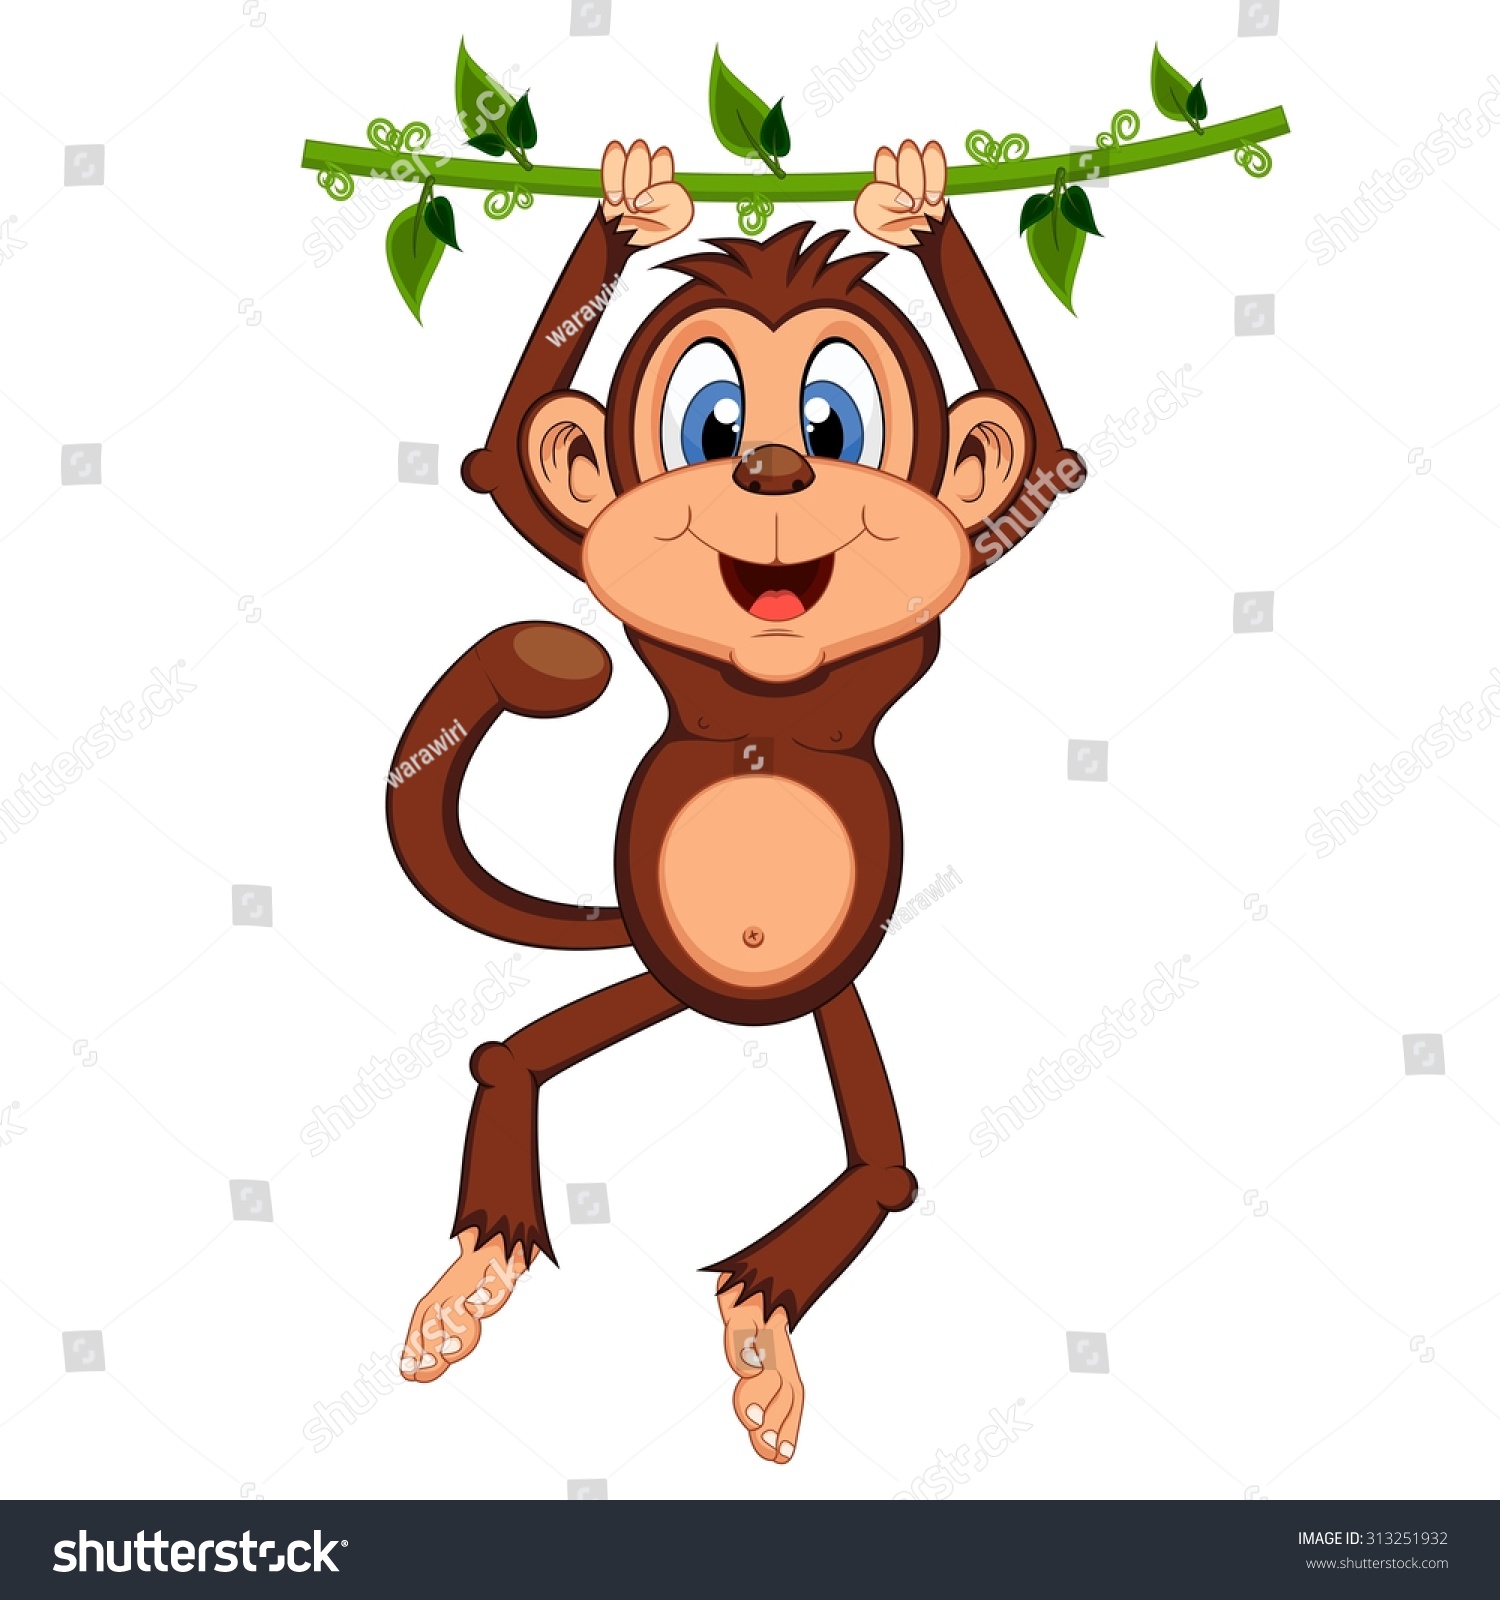 clipart monkey swinging - photo #44